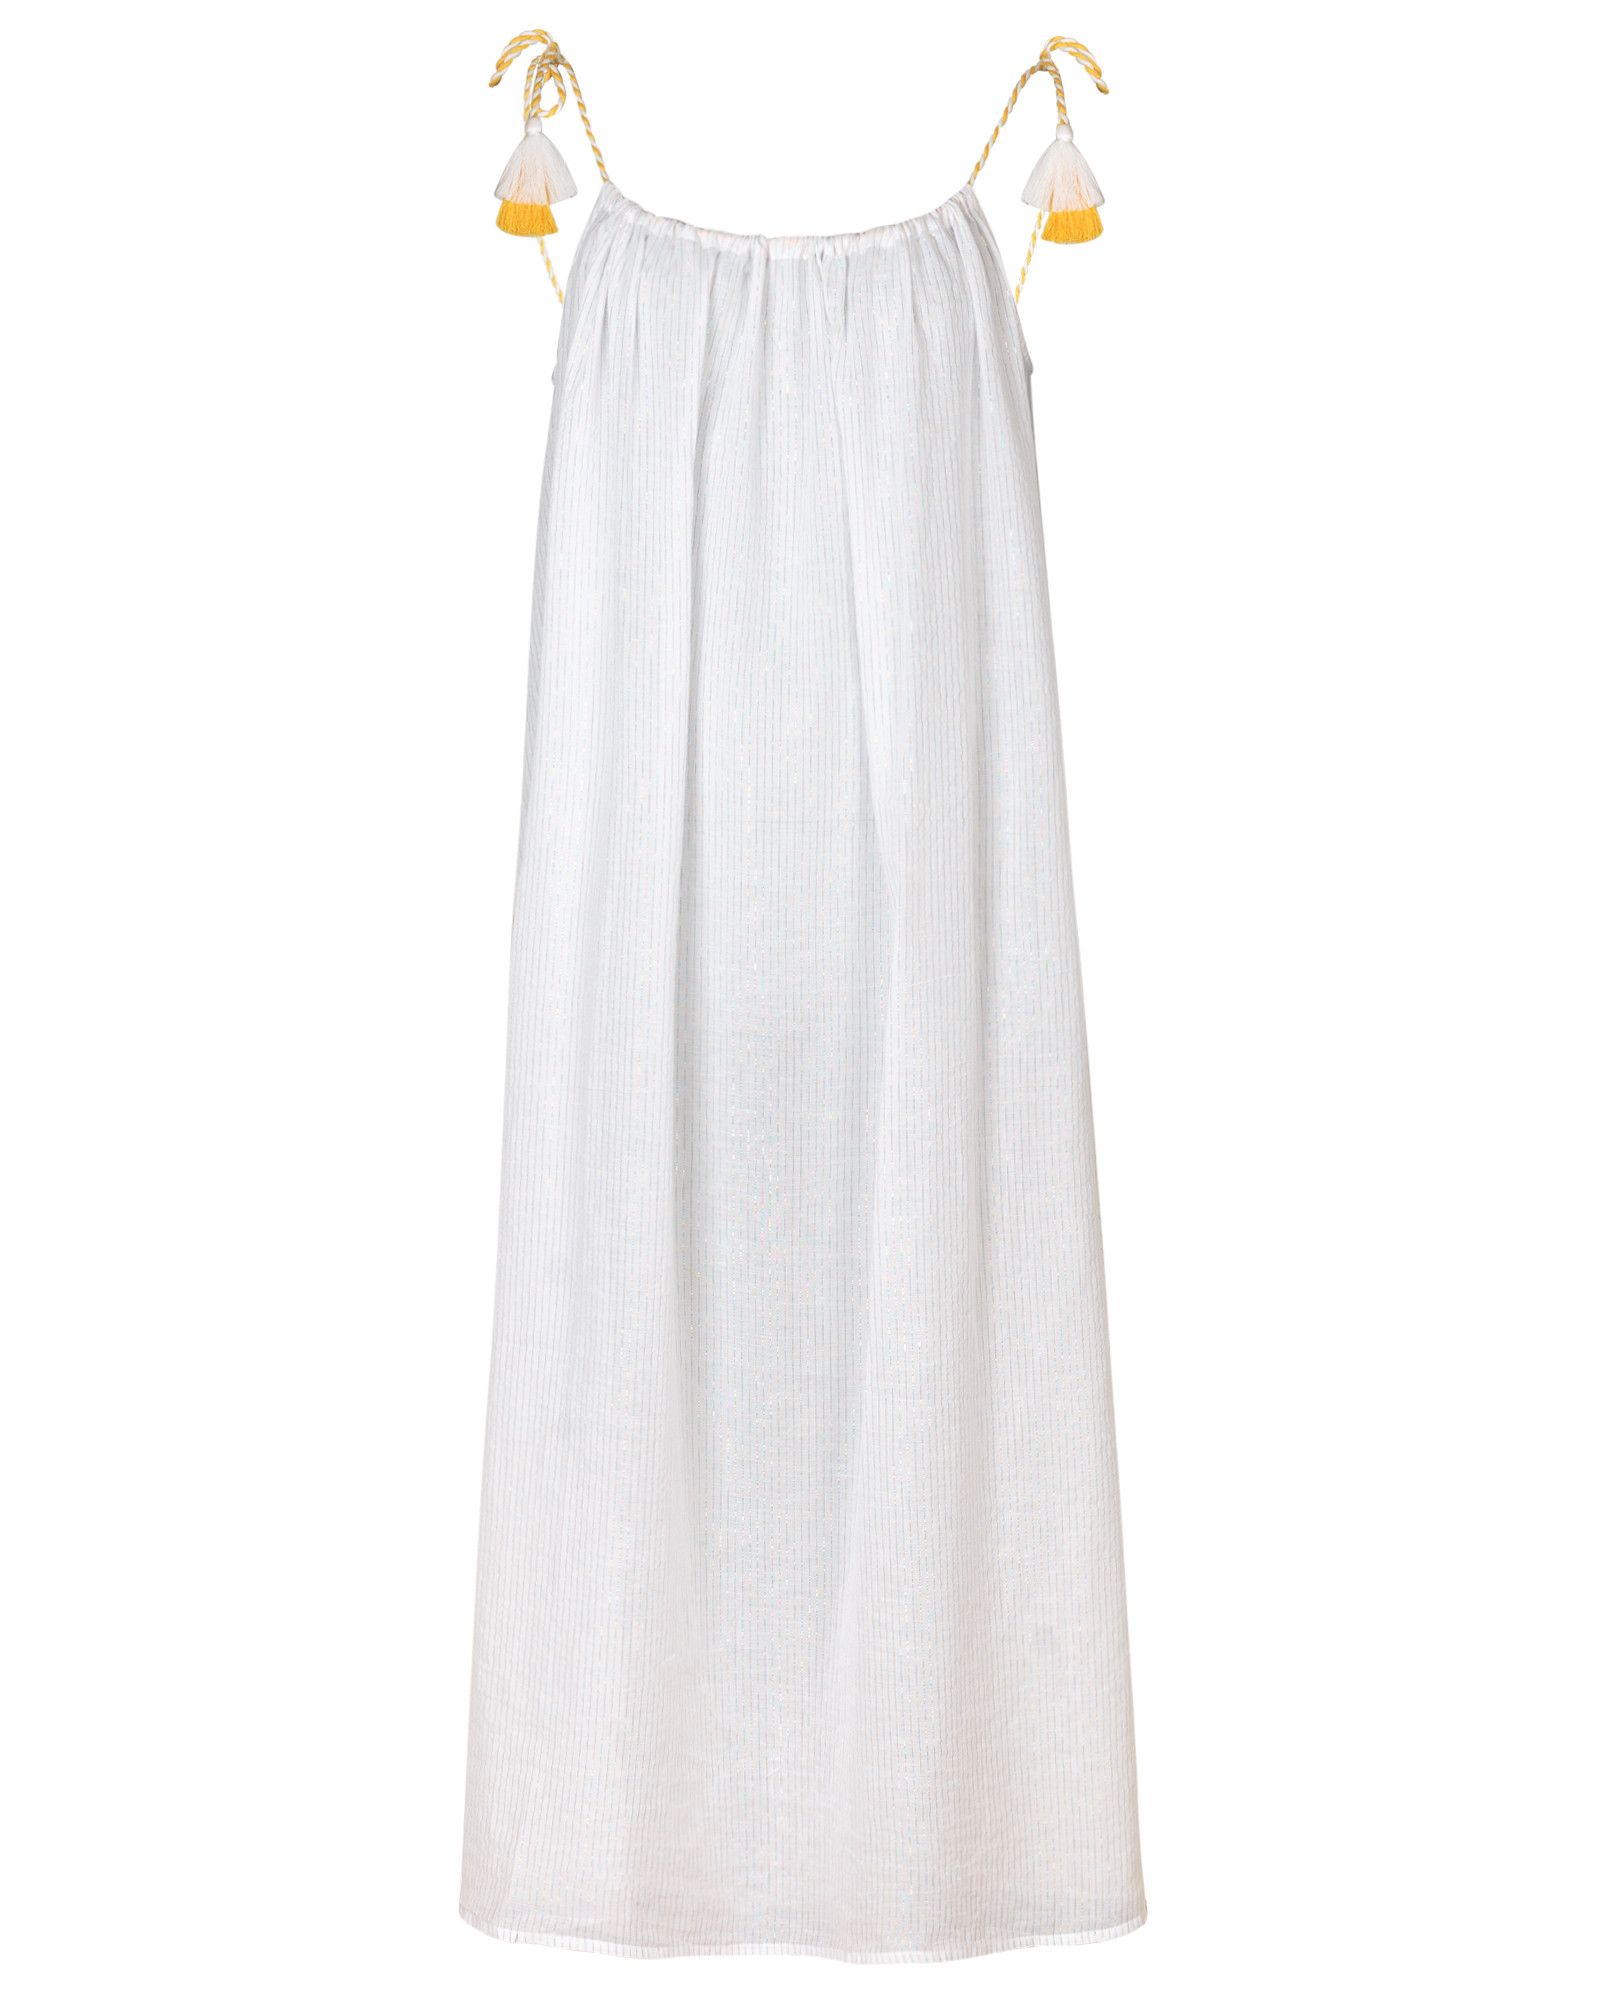 white midi beach dress